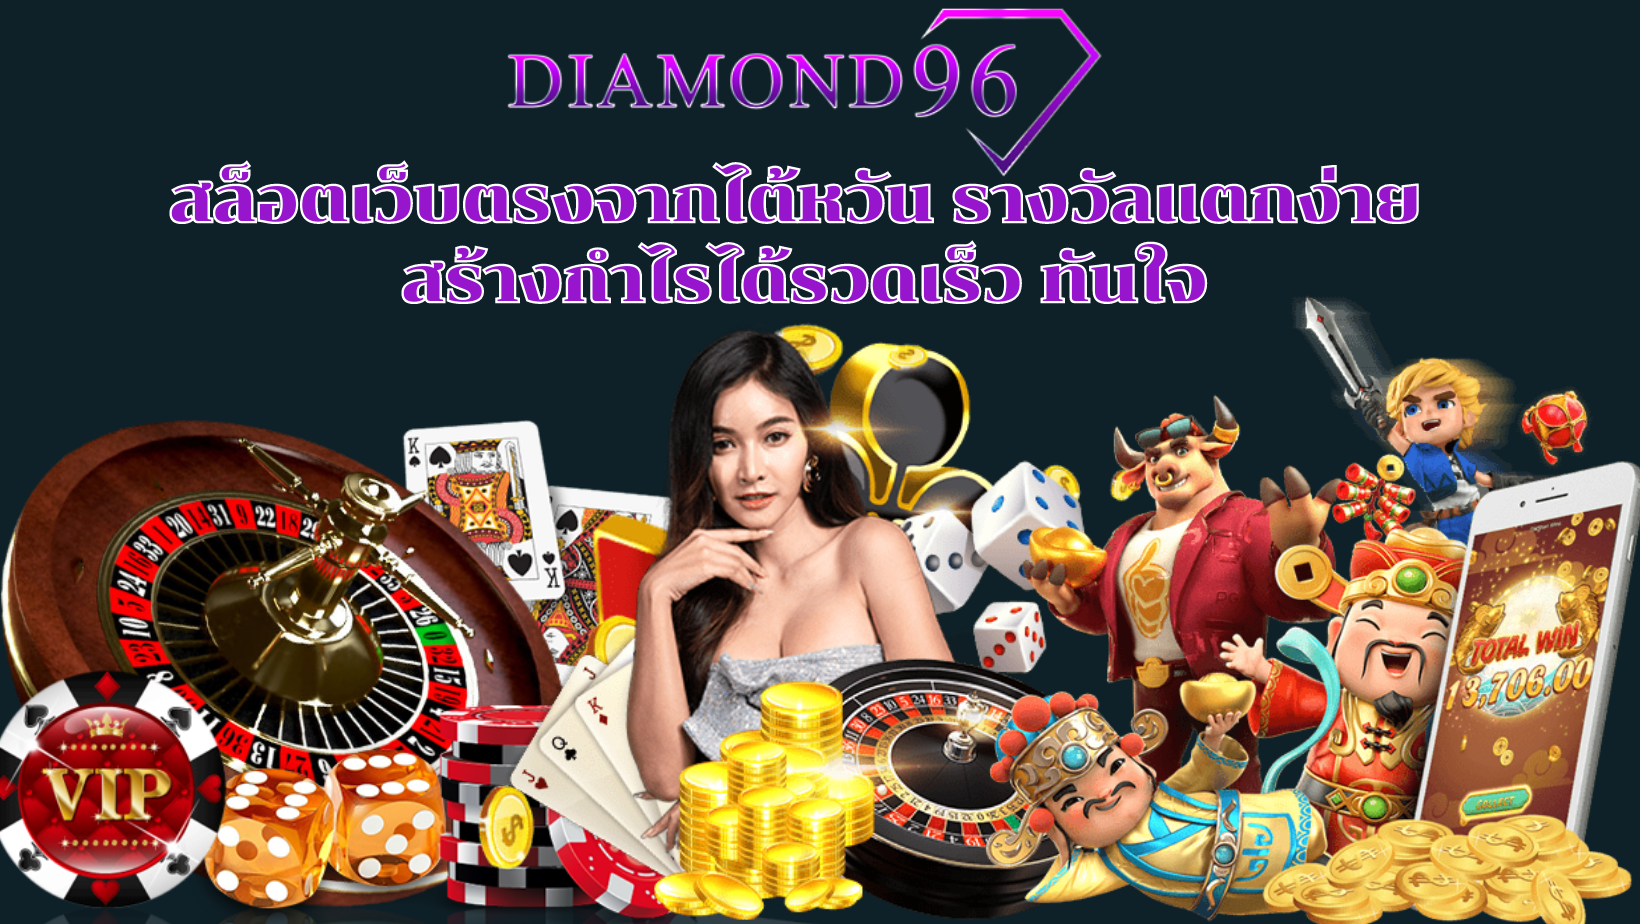 DIAMOND96